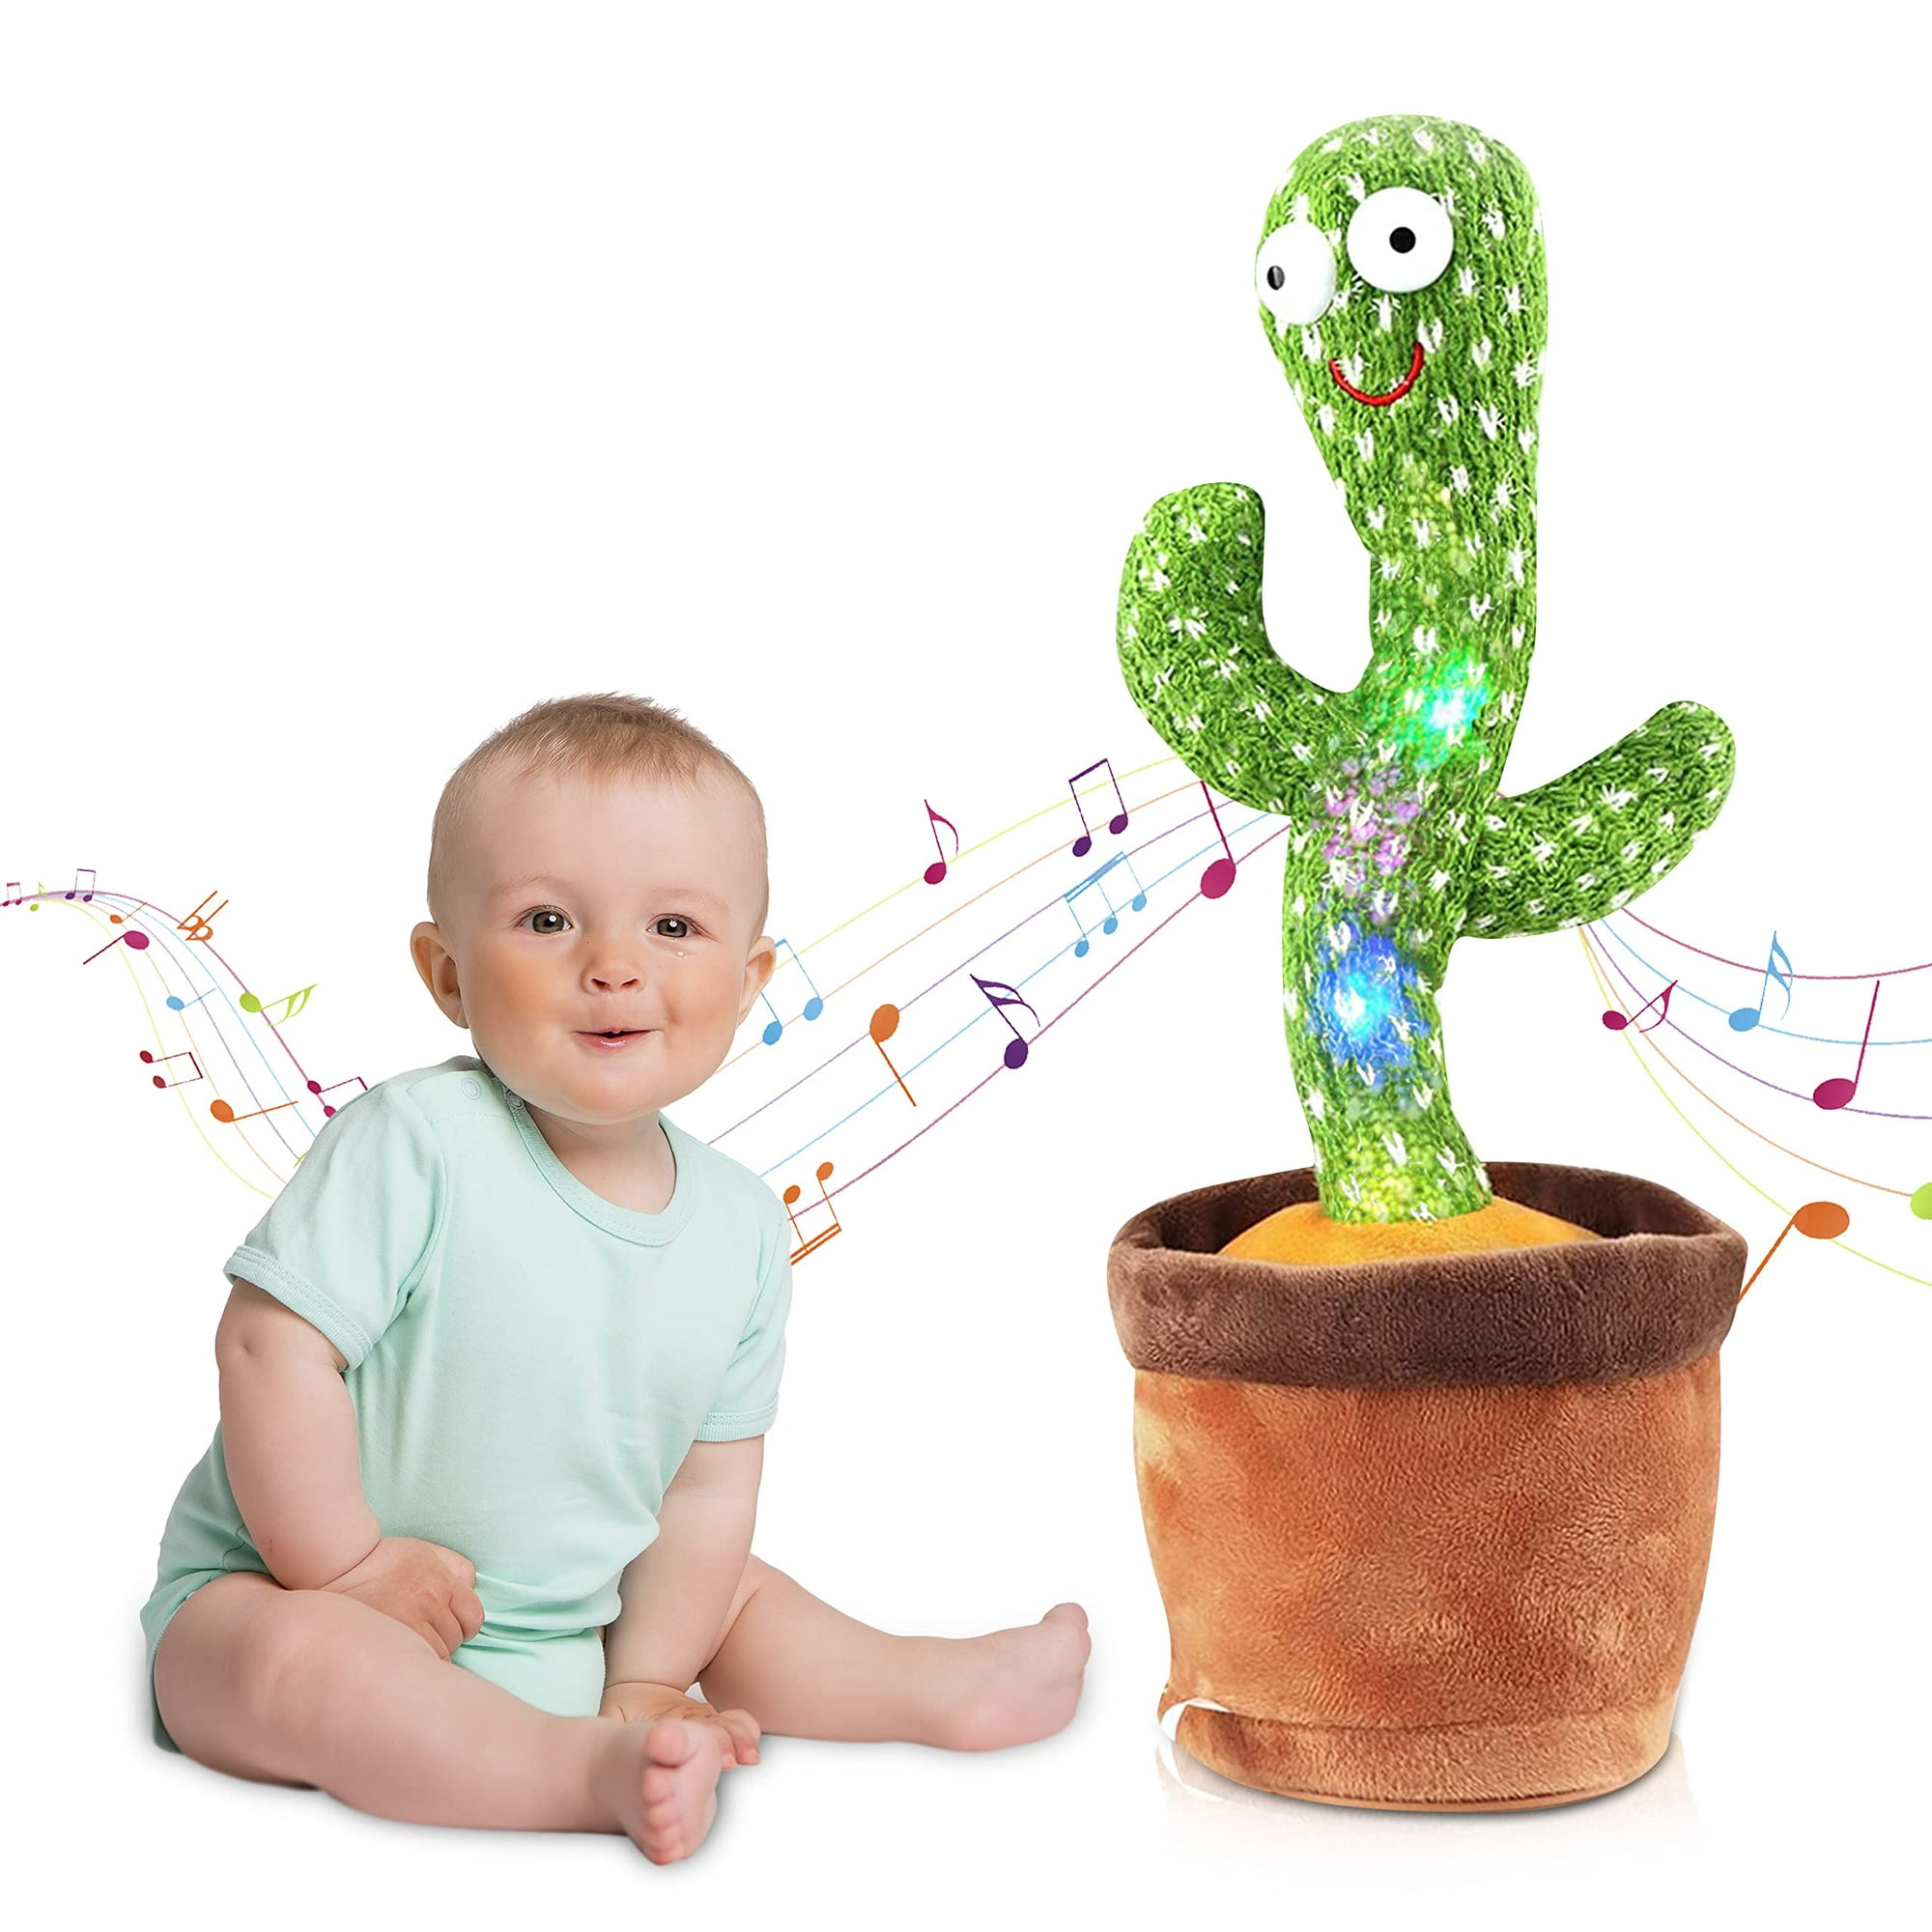 Juguete De Cactus Parlante, Juguete De Bebé Cactus Bailarín Con